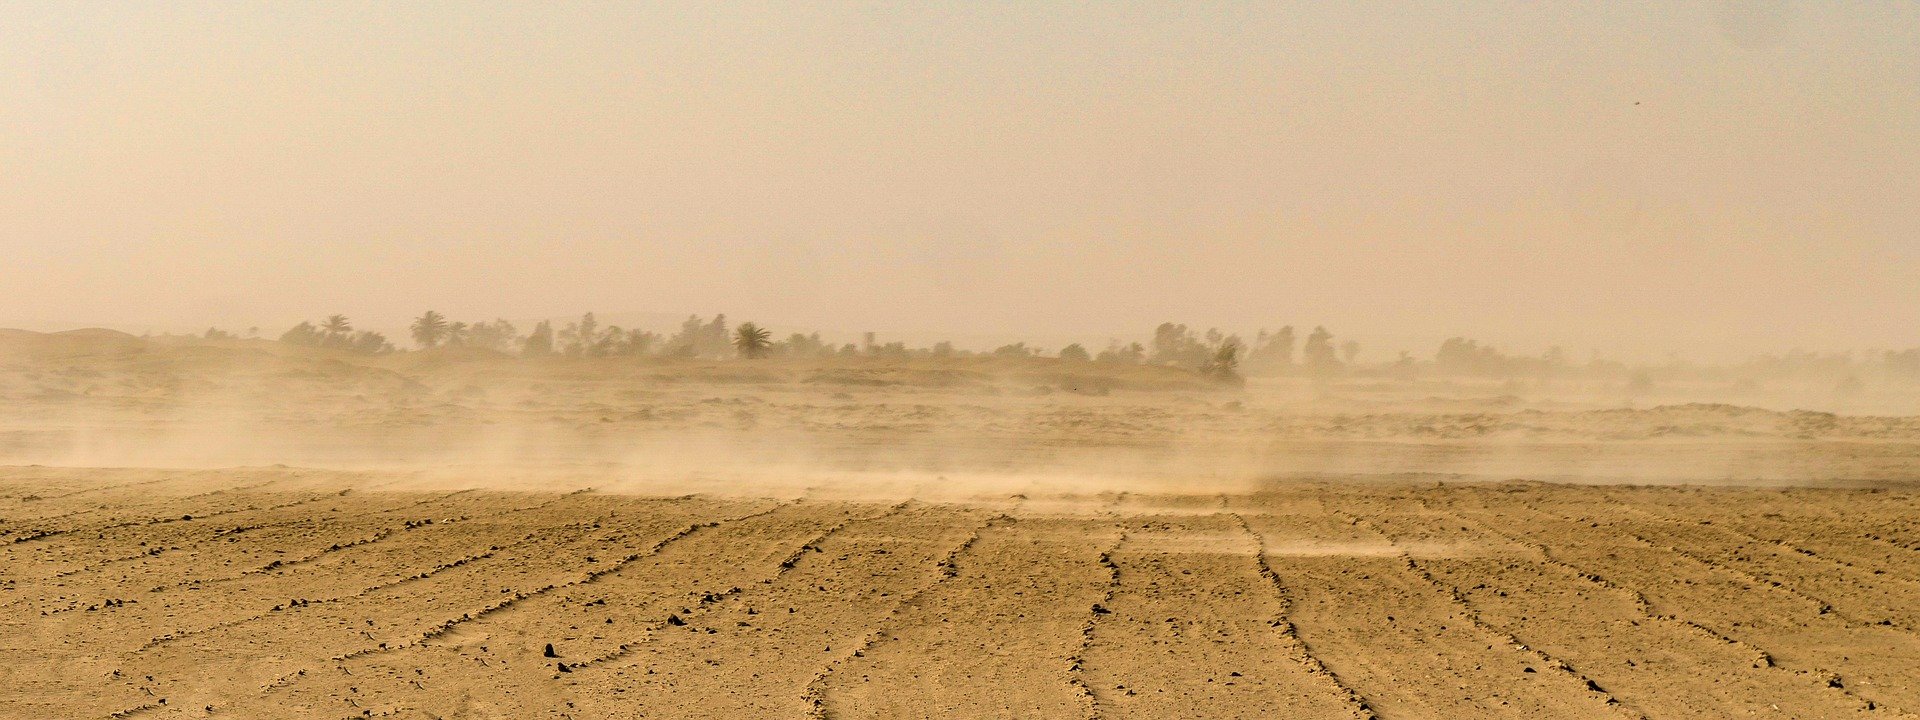 Wüstenluft zu Wasser – Technologie macht es möglich